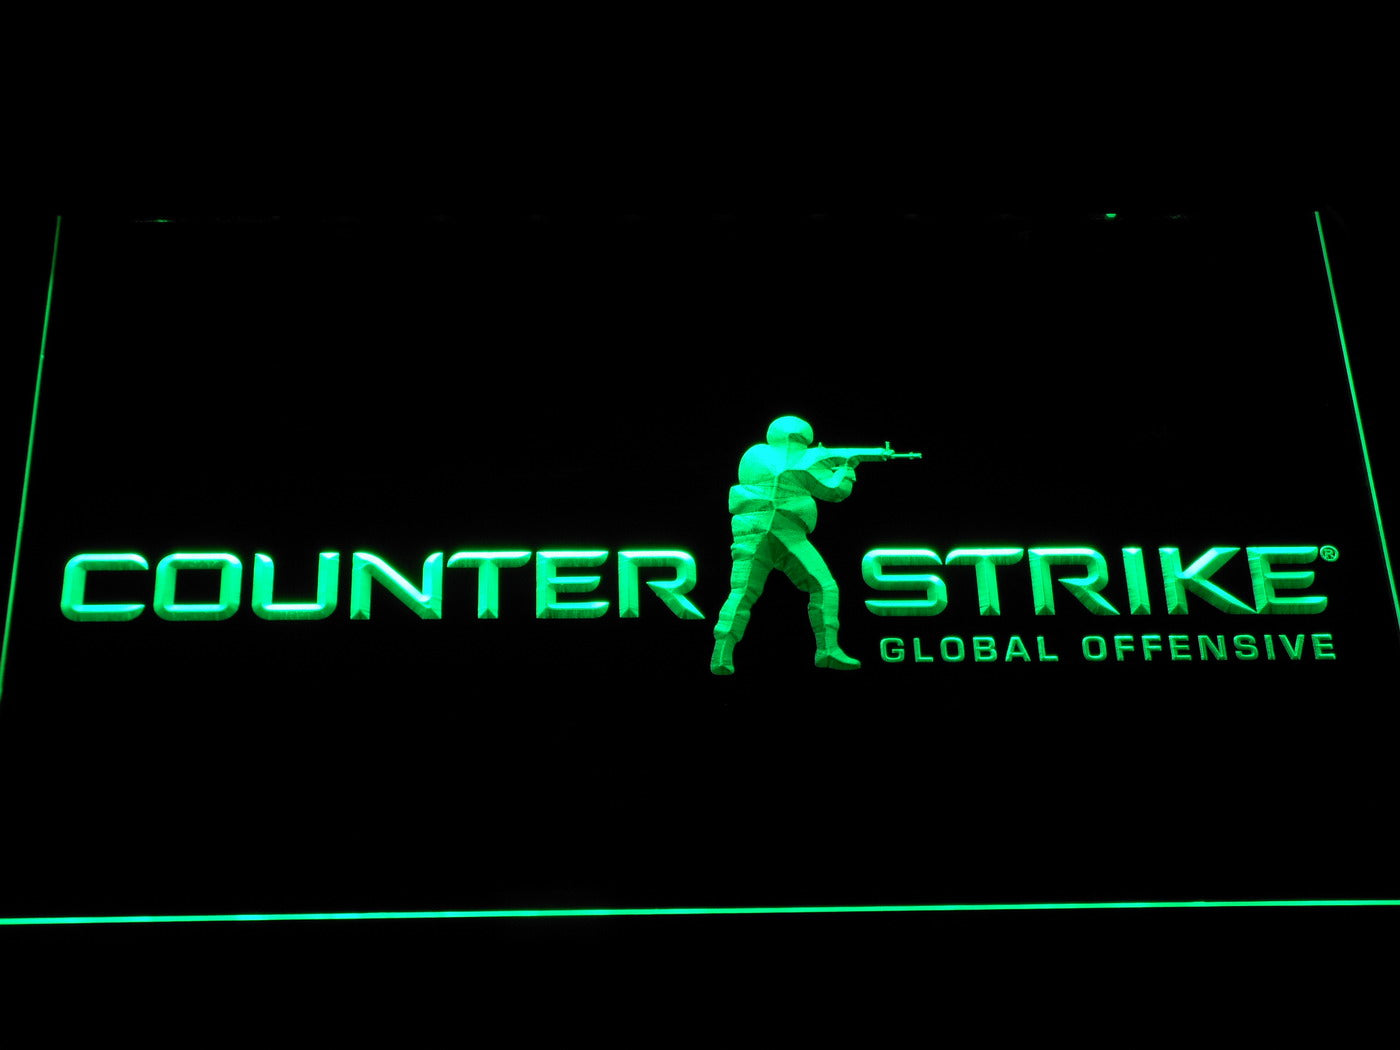 Counter-Strike CS Neon Light LED Sign